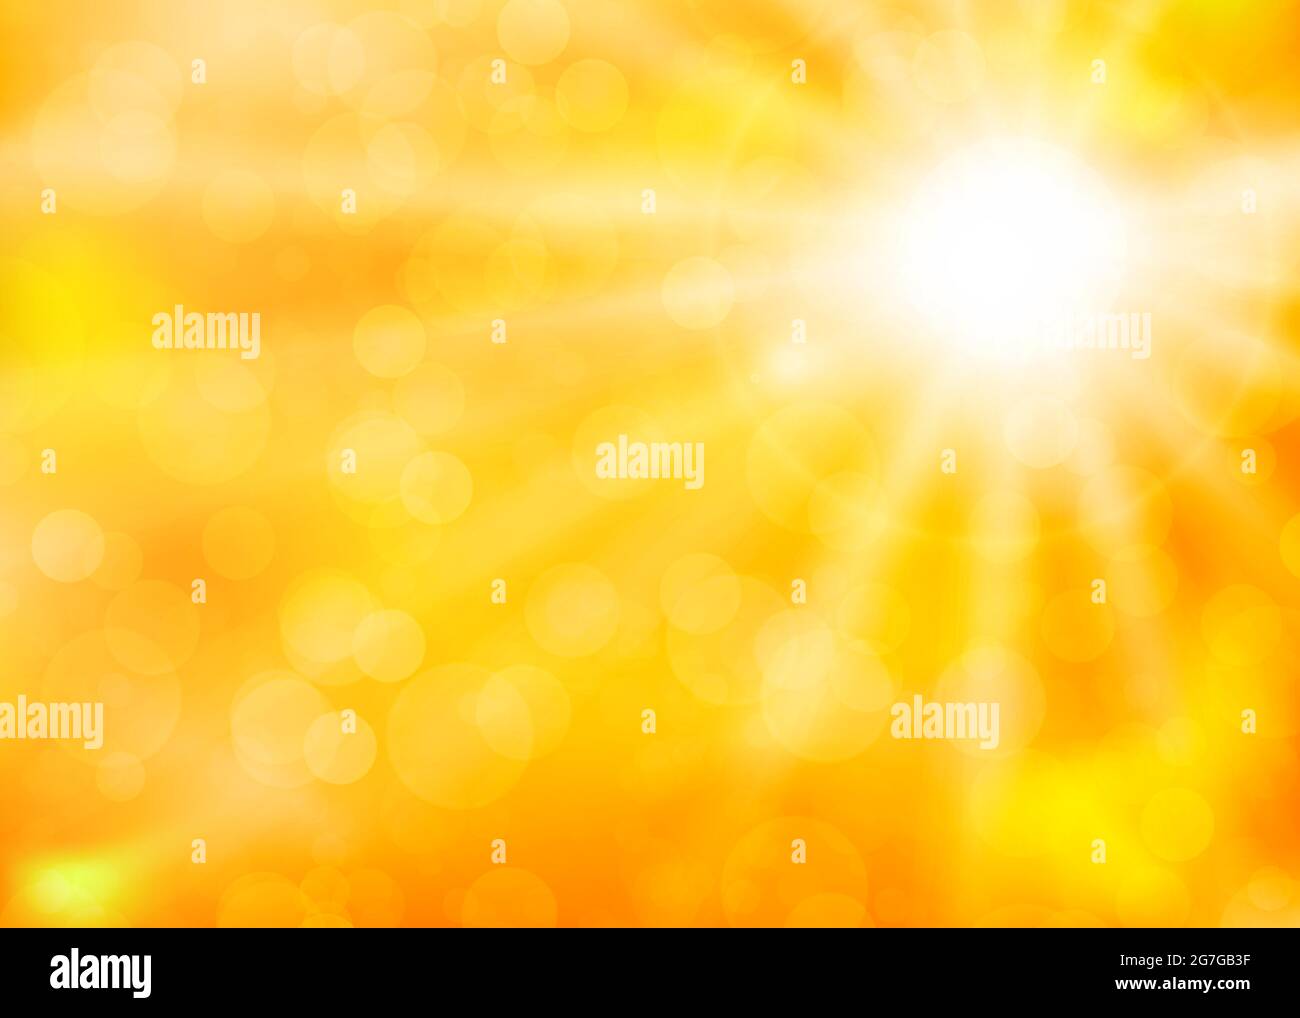 Heiße Sonne. Hitzewelle. Konzept der globalen Erwärmung und des Klimawandels. Vektorgrafik Stock Vektor